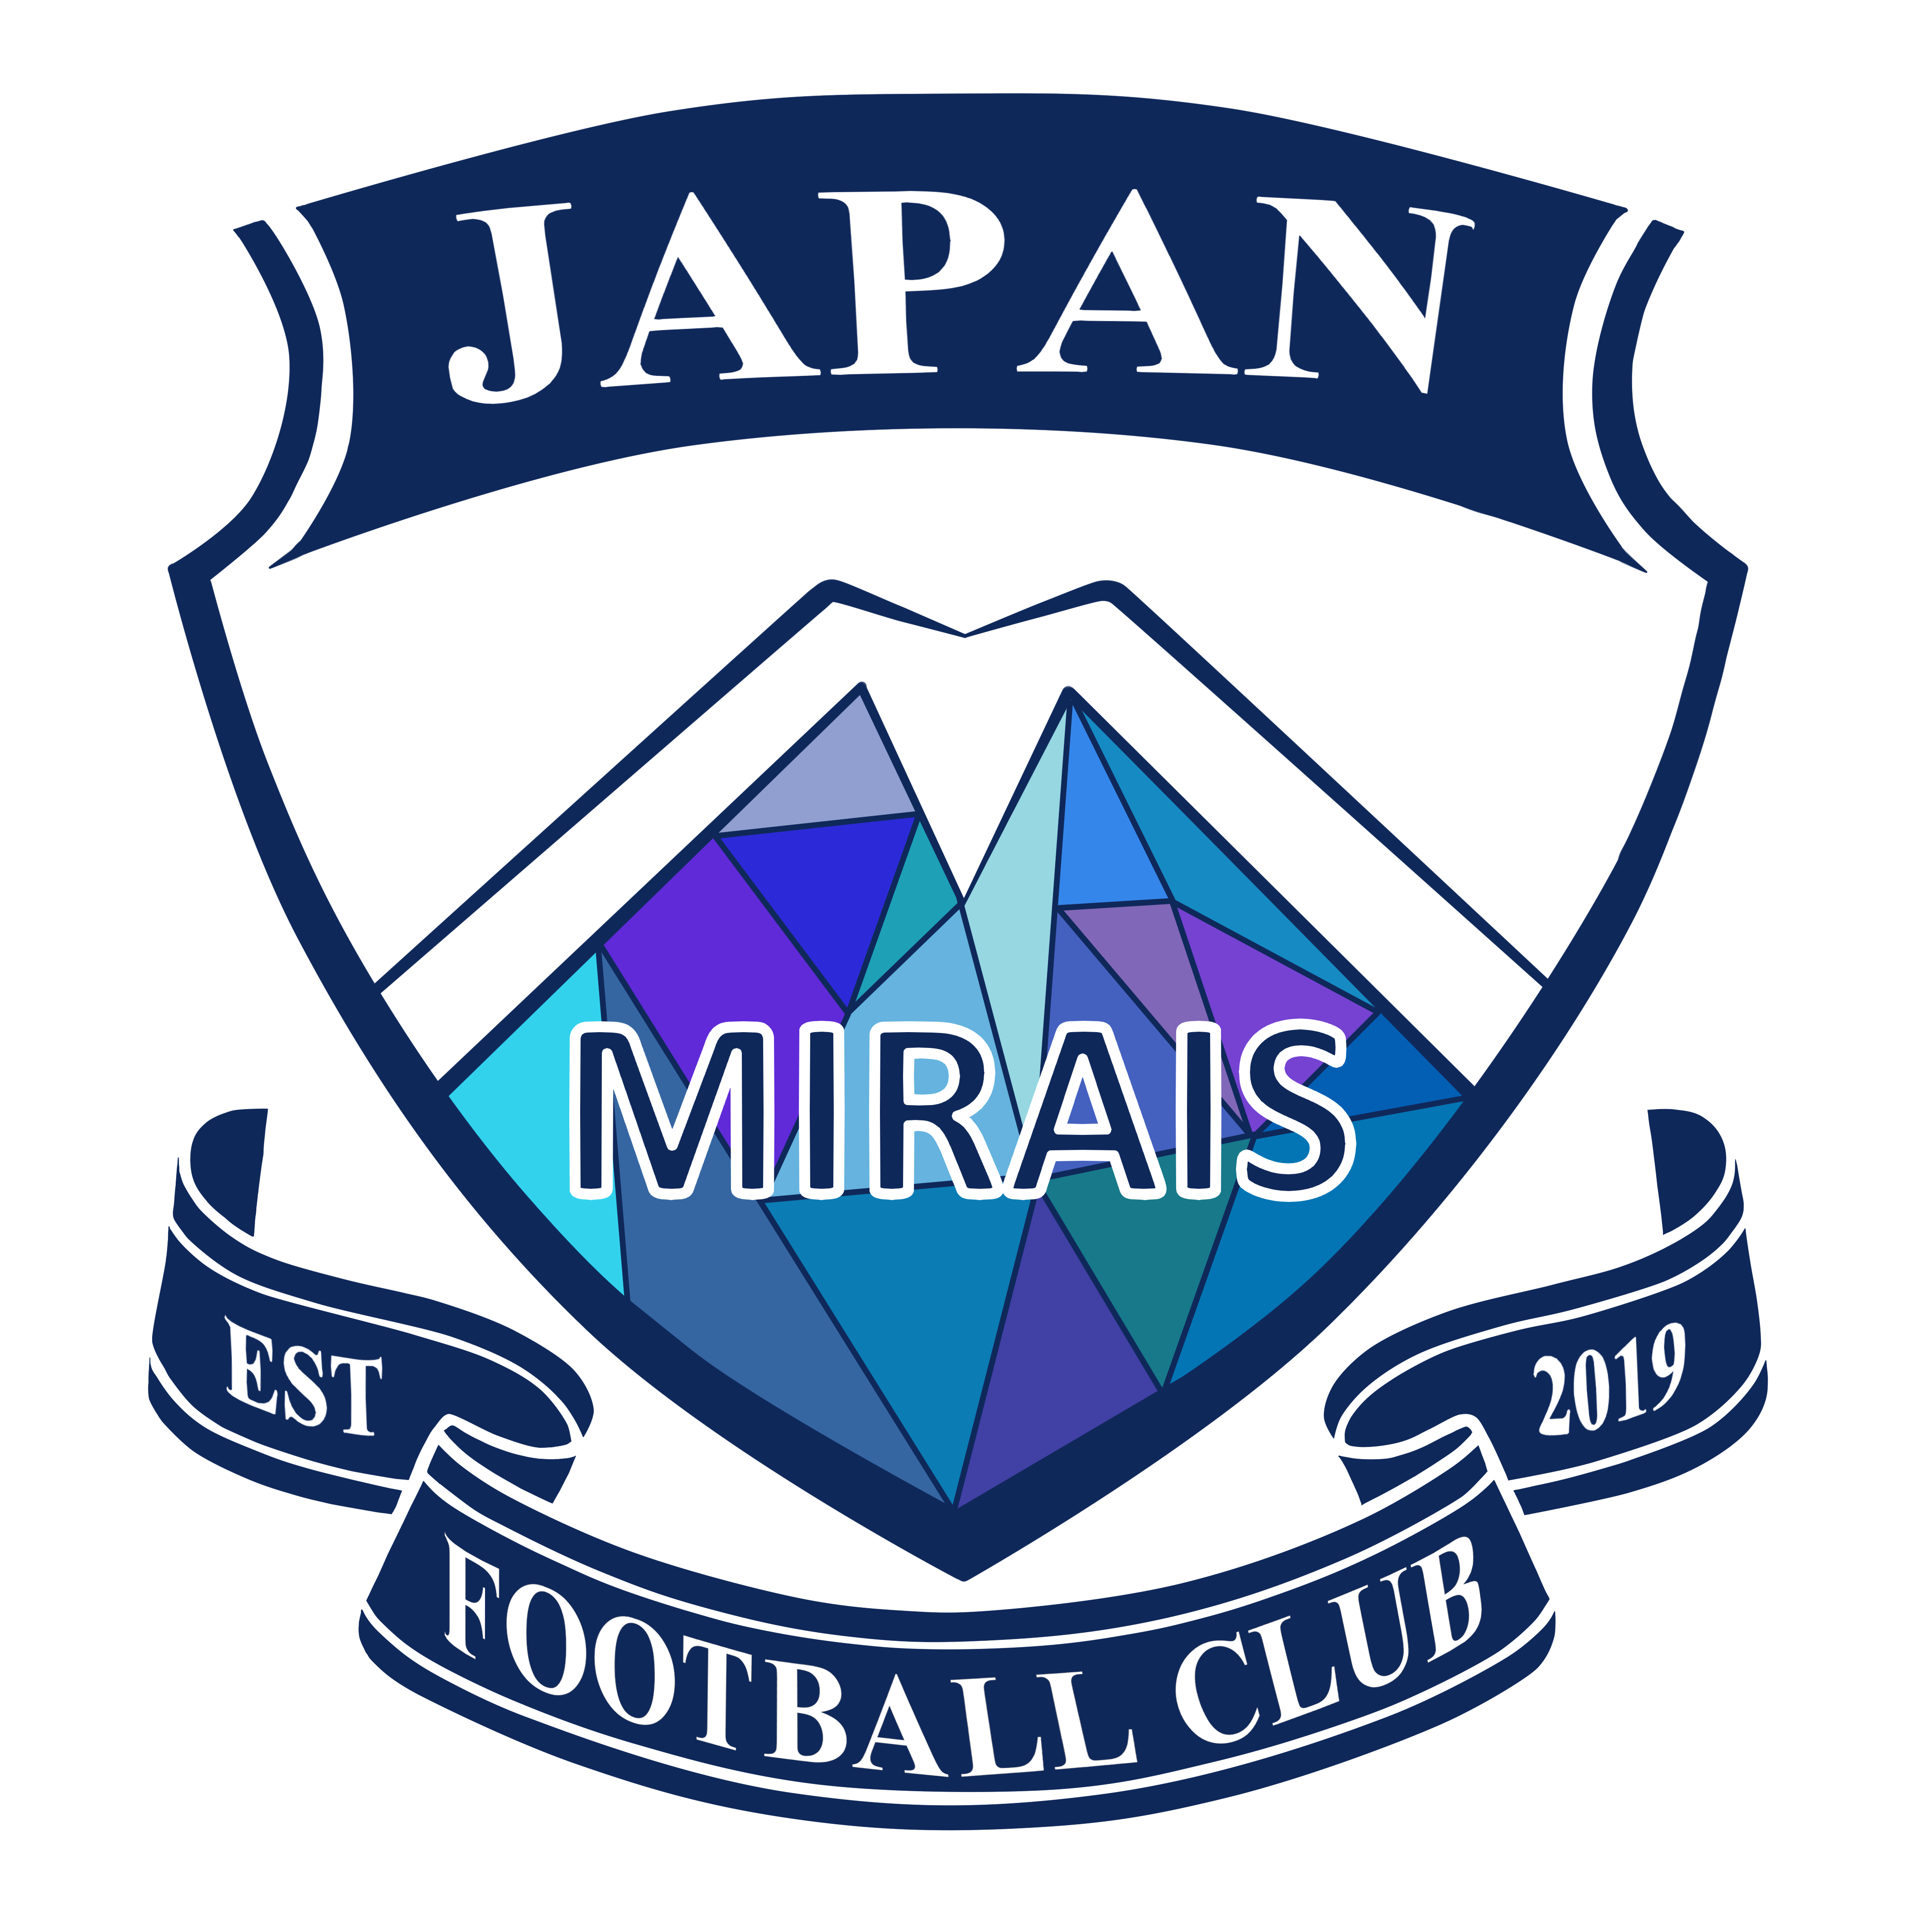 女子日本代表チーム Japan Mirais を創設 一般社団法人 日本オーストラリアンフットボール協会のプレスリリース